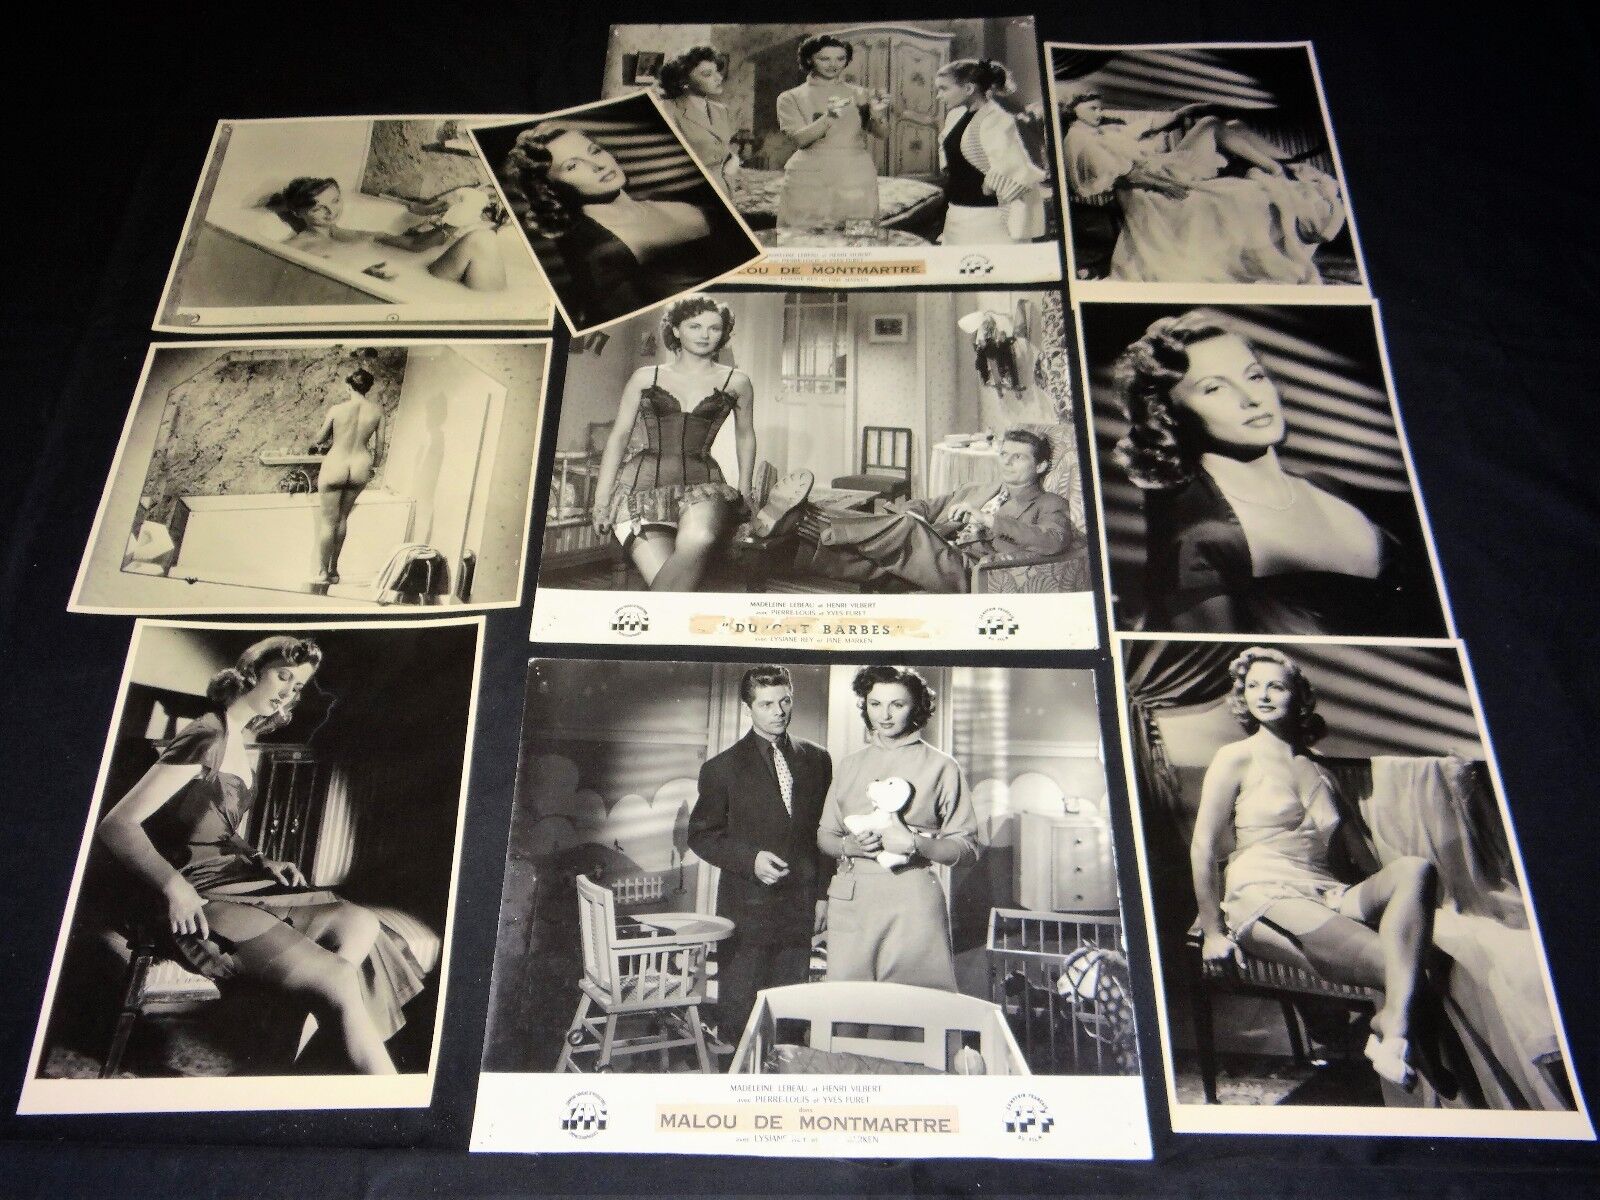 DUPONT BARBES Malou de Montmartre rare film photo set + press photos 1951